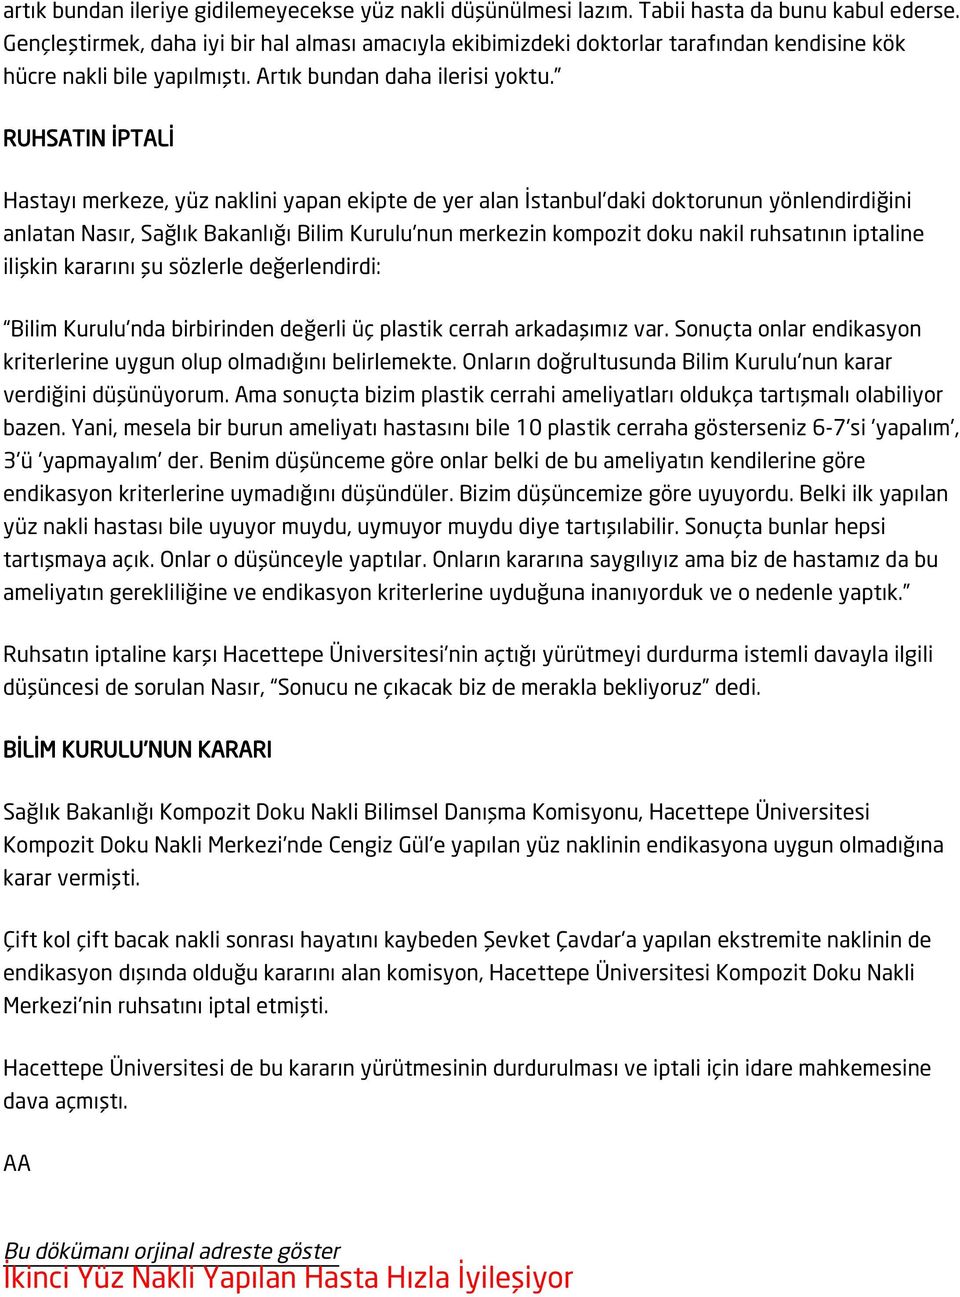 RUHSATIN İPTALİ Hastayı merkeze, yüz naklini yapan ekipte de yer alan İstanbul'daki doktorunun yönlendirdiğini anlatan Nasır, Sağlık Bakanlığı Bilim Kurulu'nun merkezin kompozit doku nakil ruhsatının